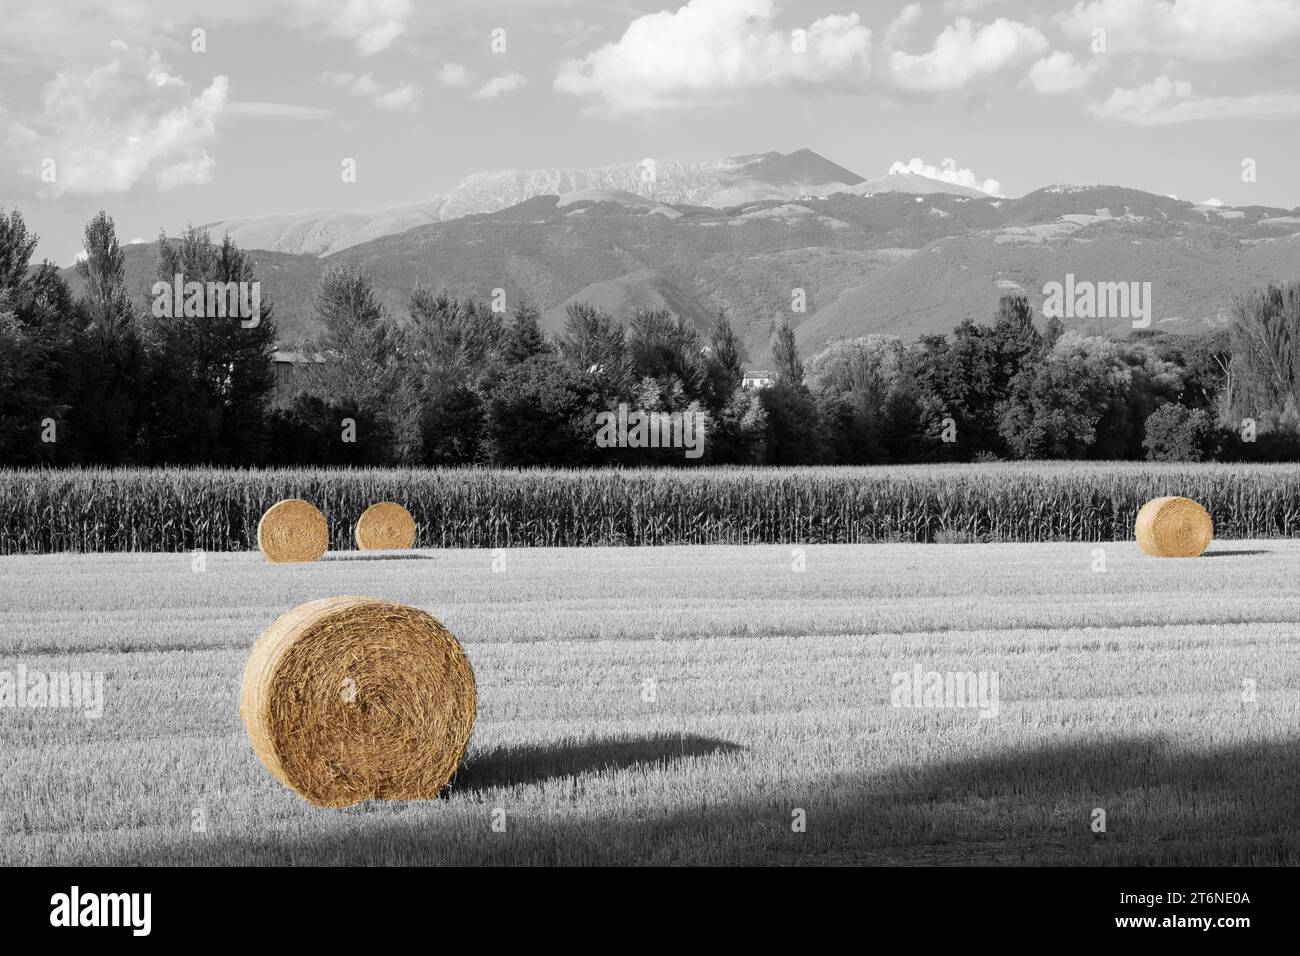 Rouleaux de paille dans un champ avec la montagne Terminillo en arrière-plan, Italie Banque D'Images